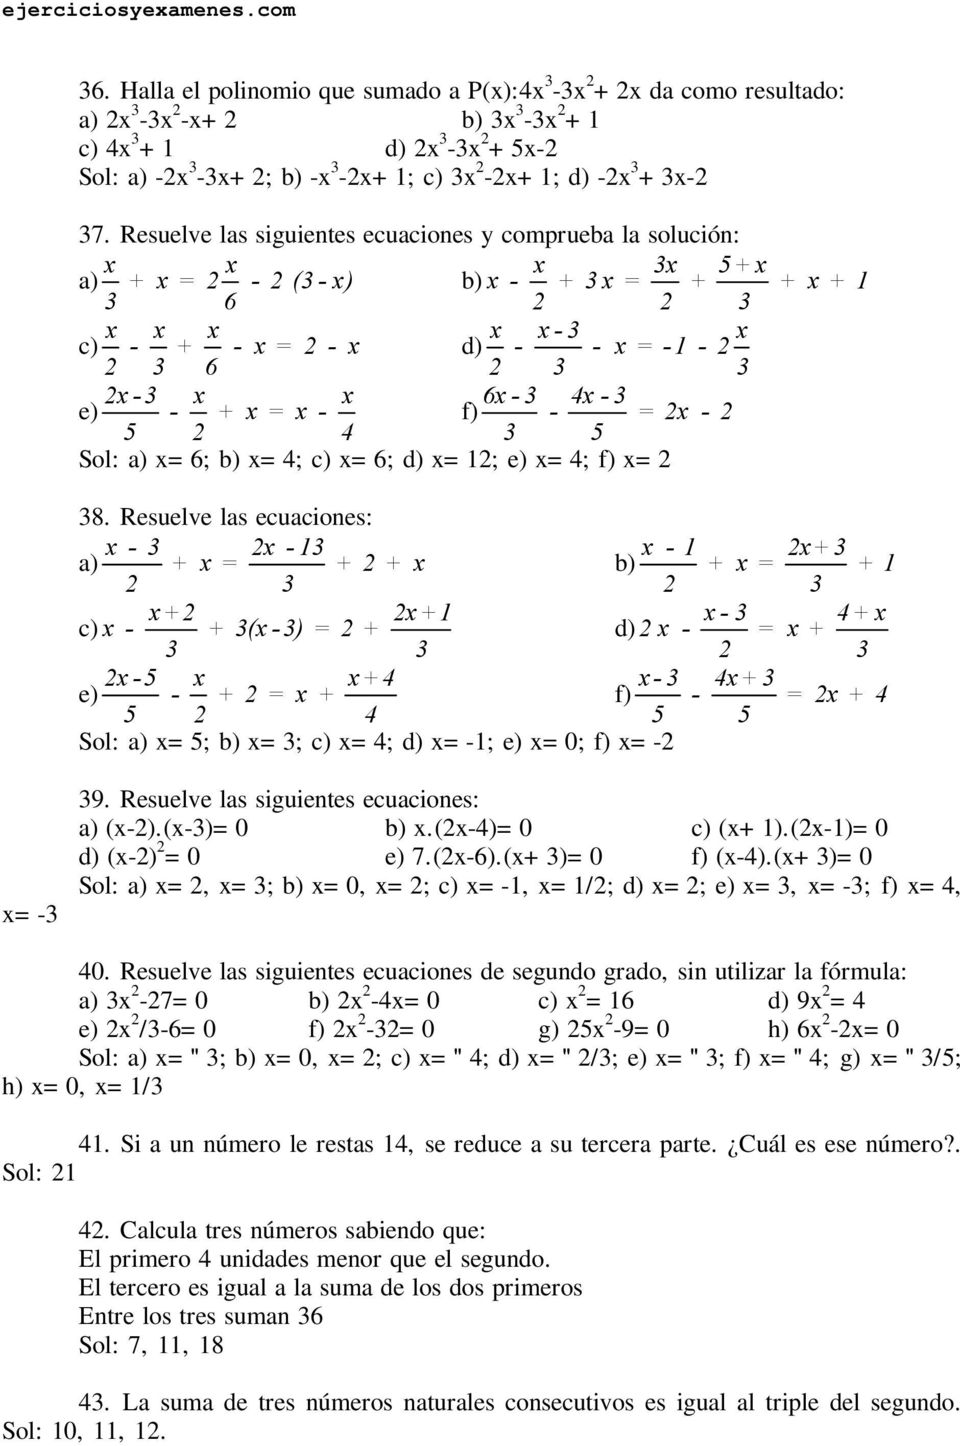 Resuelve las ecuaciones: - - 1-1 + a) + = + + b) + = + 1 + +1 - + c) - + ( -) = + - = + -5 + - + e) - + = + f) - = + 5 5 5 Sol: a) =5; b) =; c) =; =-1; e) =0; f) =- =- 9.